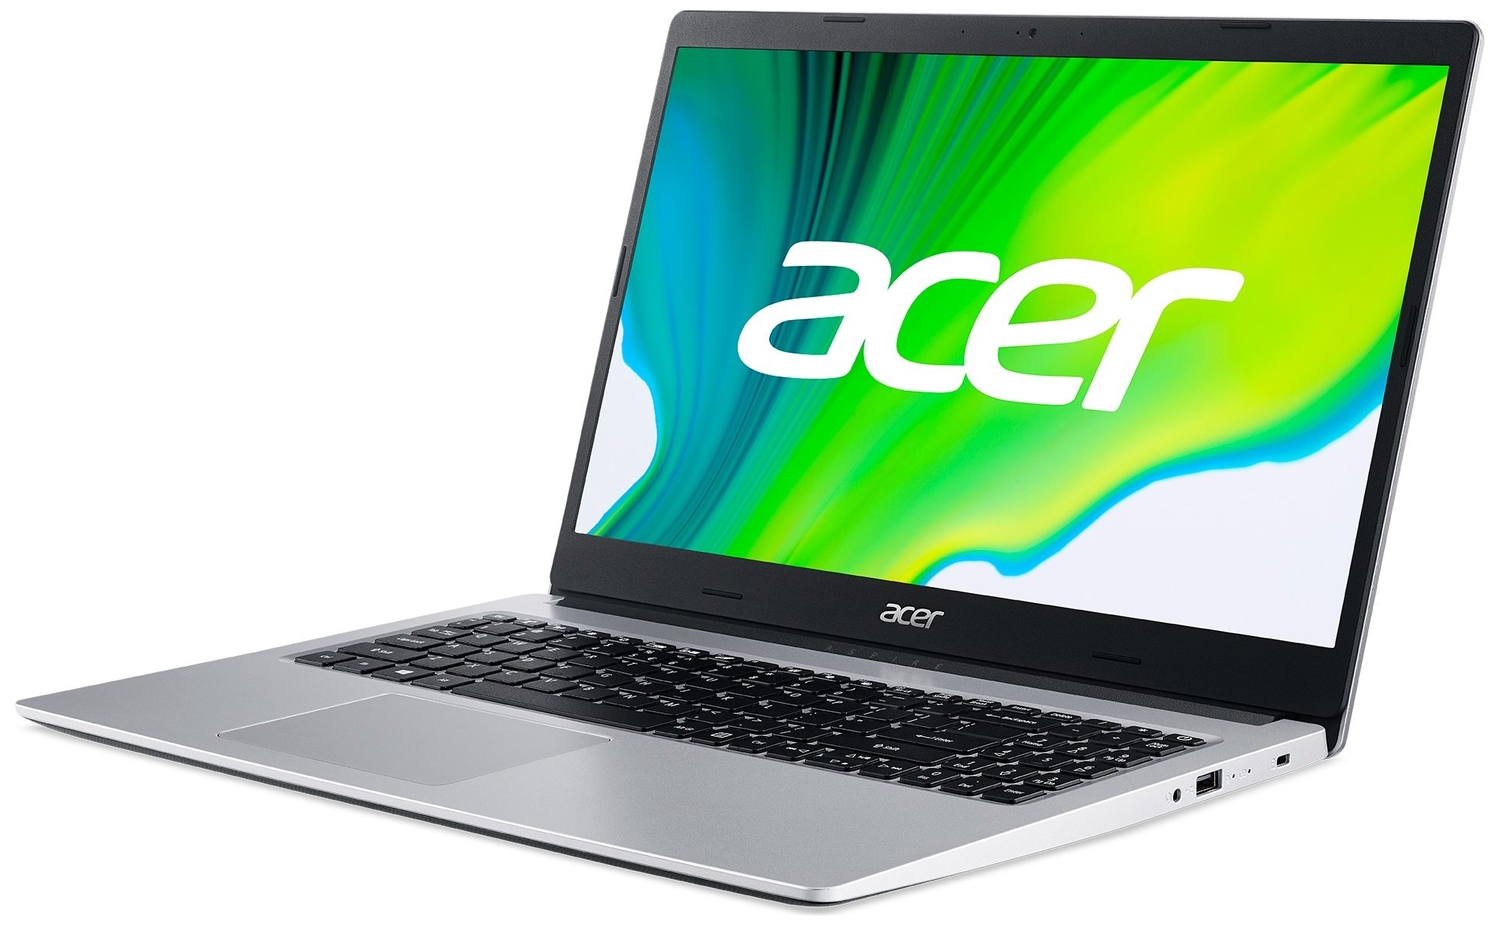 Acer i3 1115g4. Acer Aspire 3 a315-57g. Acer Swift 5 sf514-55ta-725a. Acer Aspire a515-56g. Acer Aspire 5 a515-56.